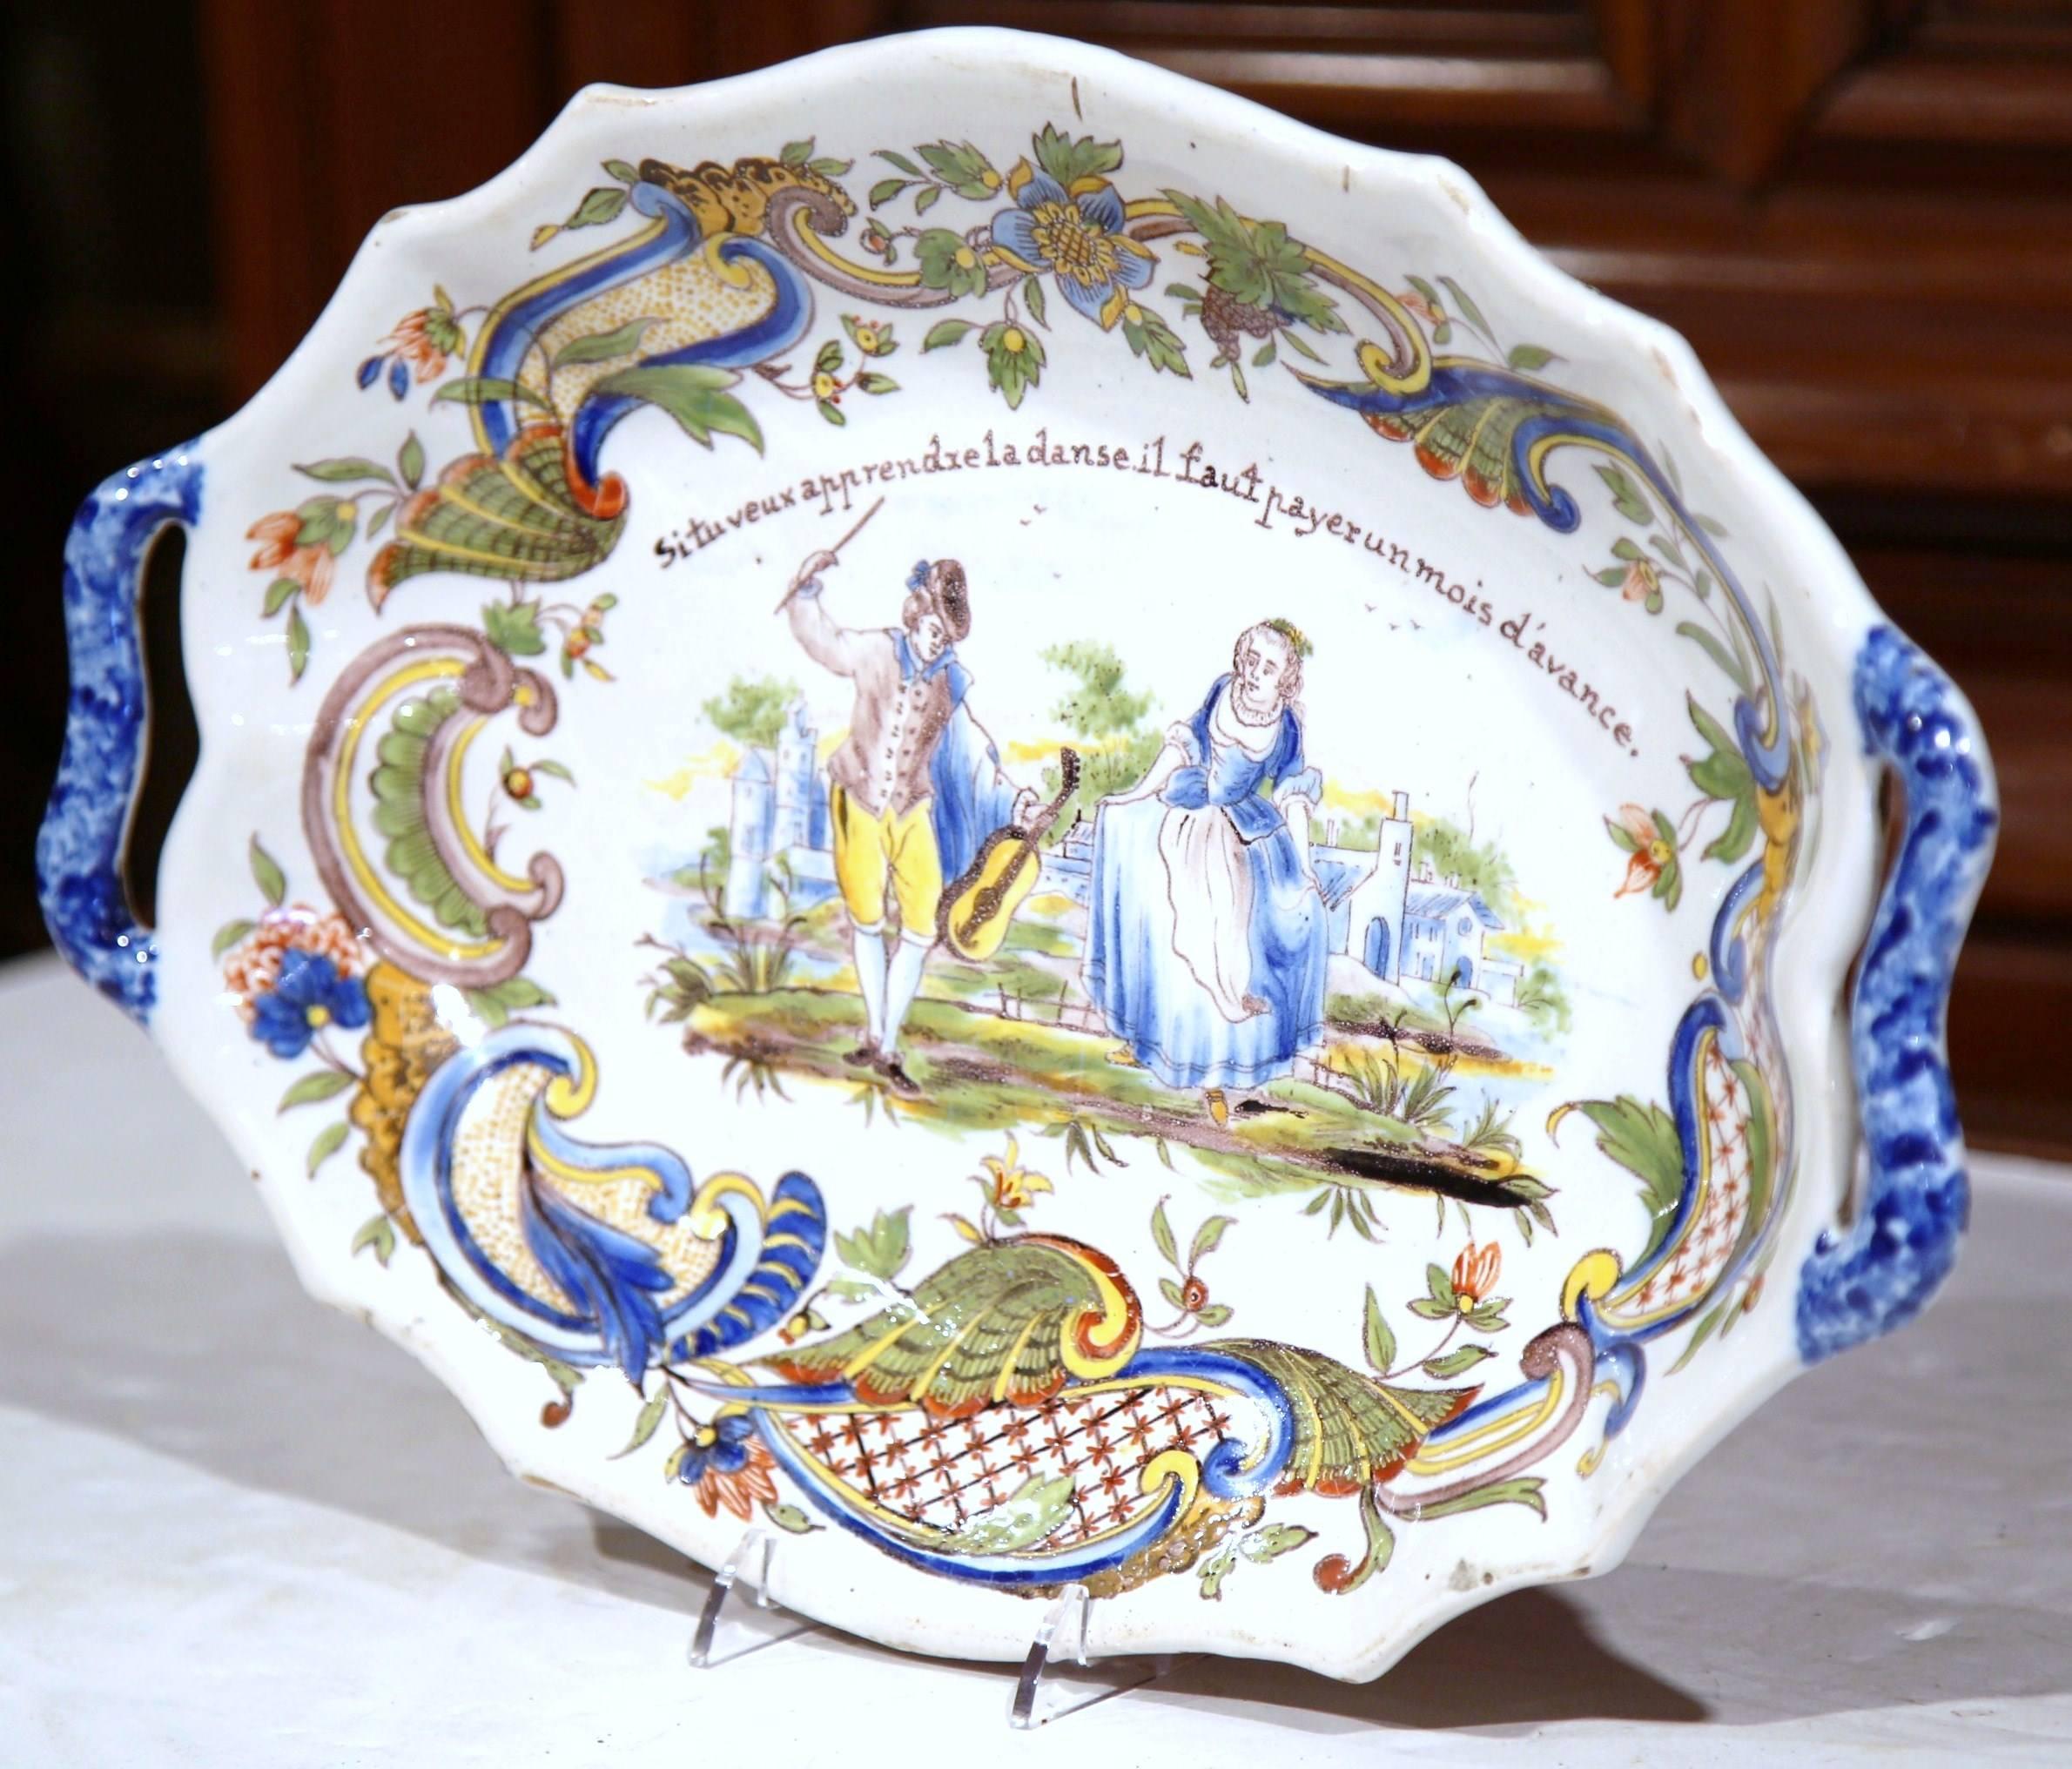 Diese schöne antike Keramikschale wurde um 1880 in der Normandie, Frankreich, hergestellt. Der stilisierte Keramikteller hat einen gezackten Rand und zeigt eine handgemalte Balzszene mit einem Geiger, der einer jungen Frau das Tanzen beibringt. Das